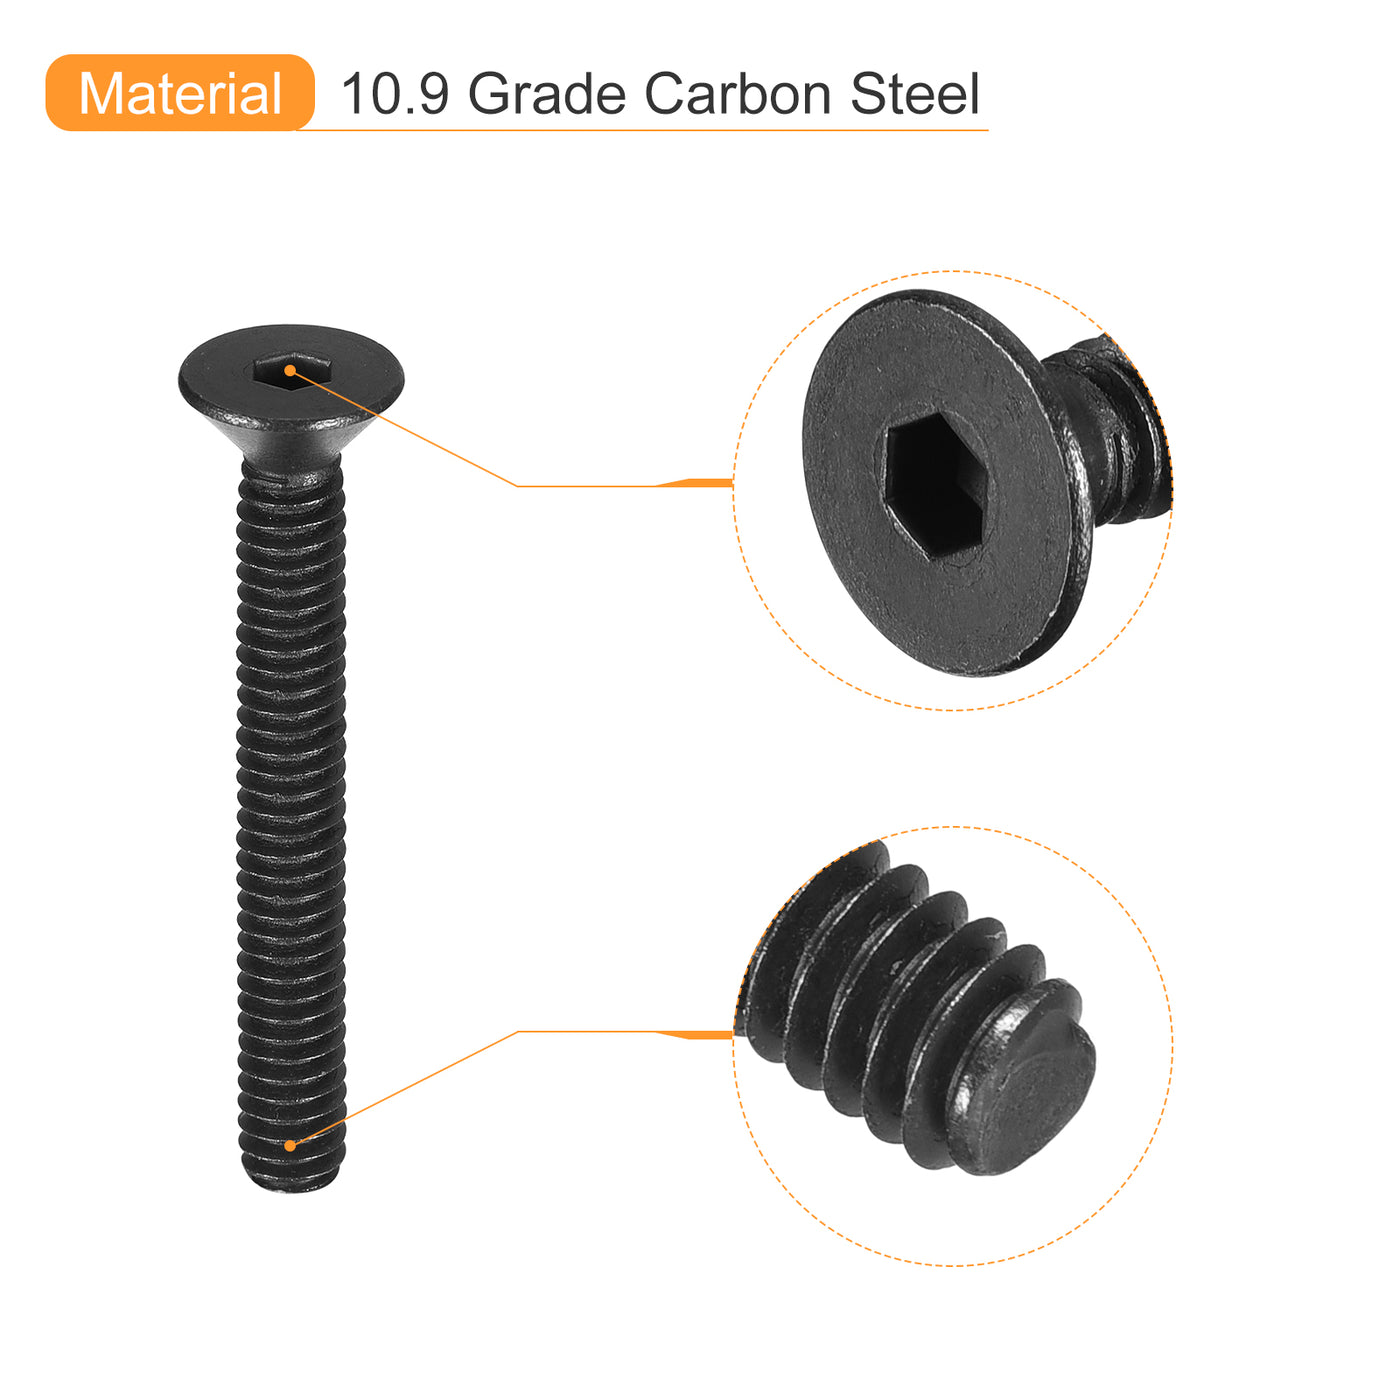 uxcell Uxcell #8-32x1-1/2" Flat Head Socket Cap Screws, 10.9 Grade Carbon, Black, 10pcs